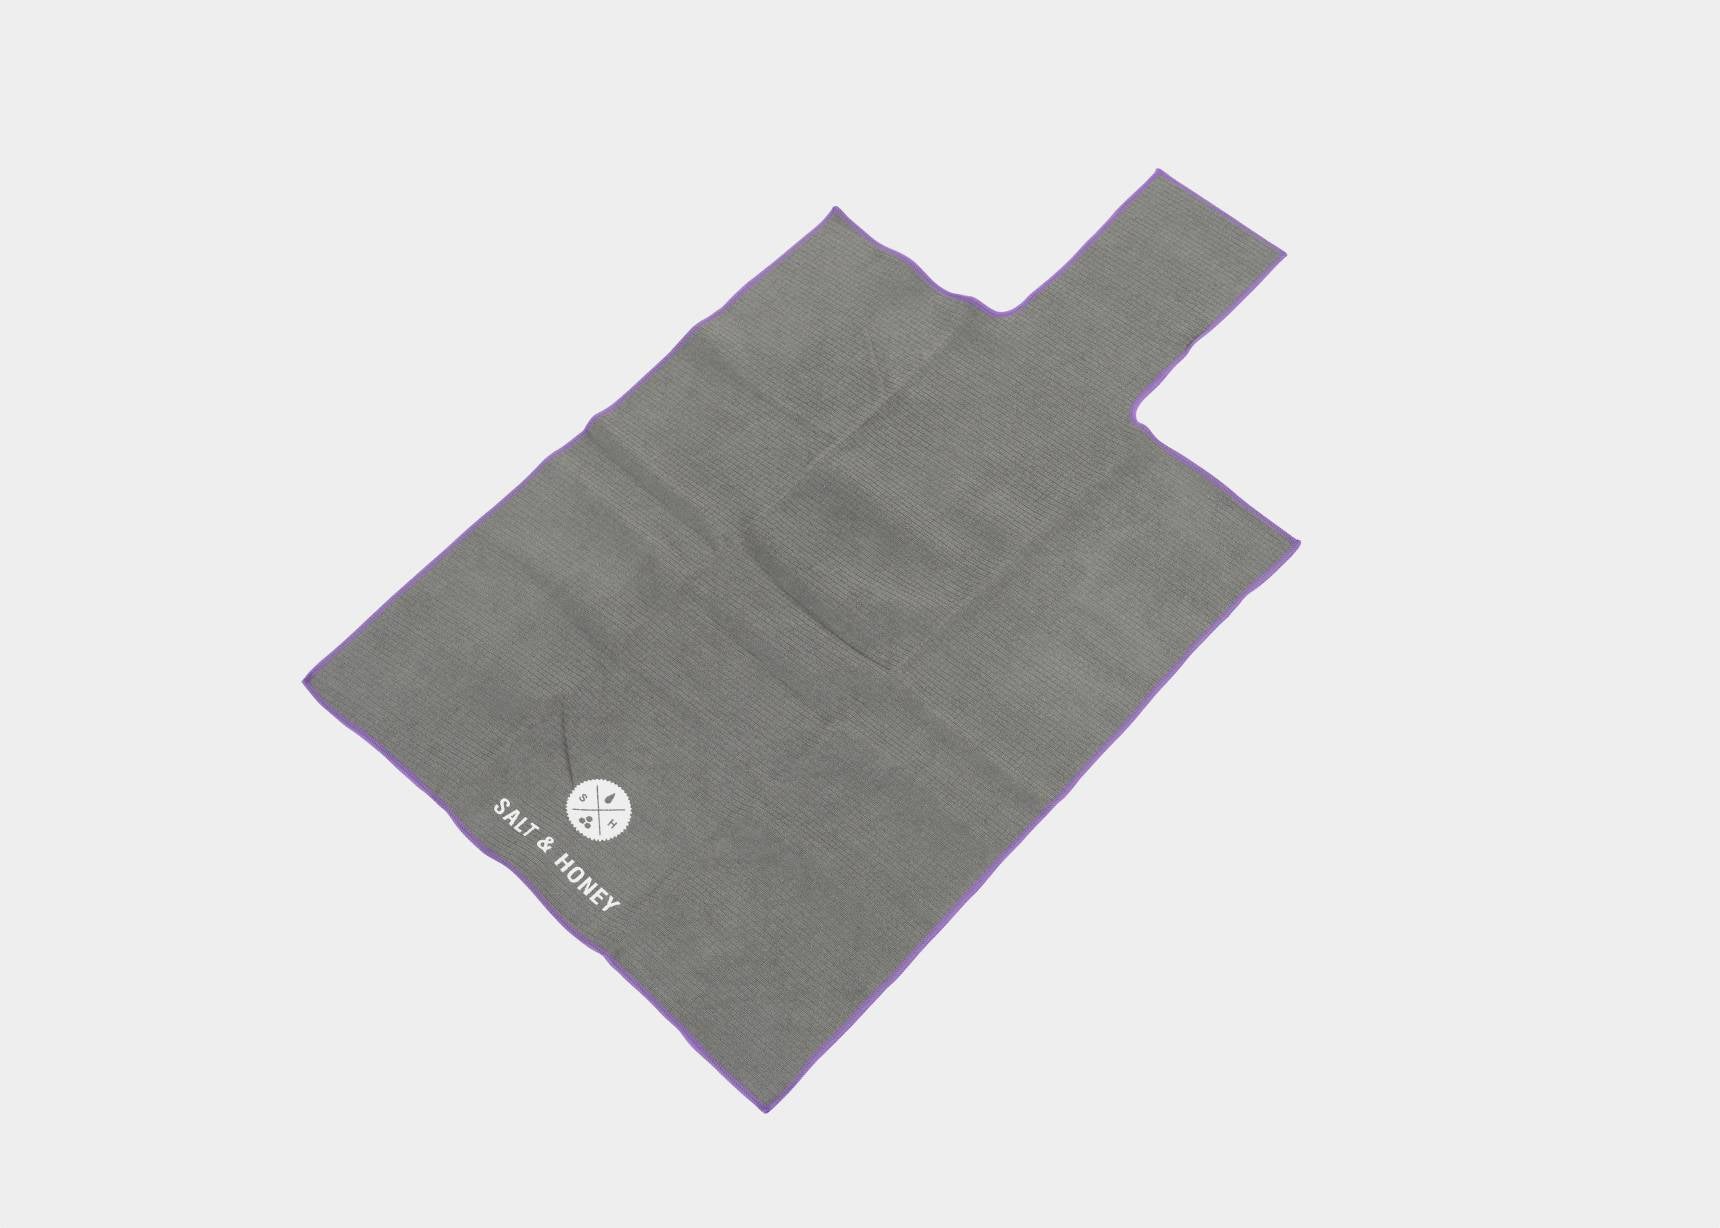 Salt & Honey Non-Slip Pilates Reformer Mat Towel (Black) 